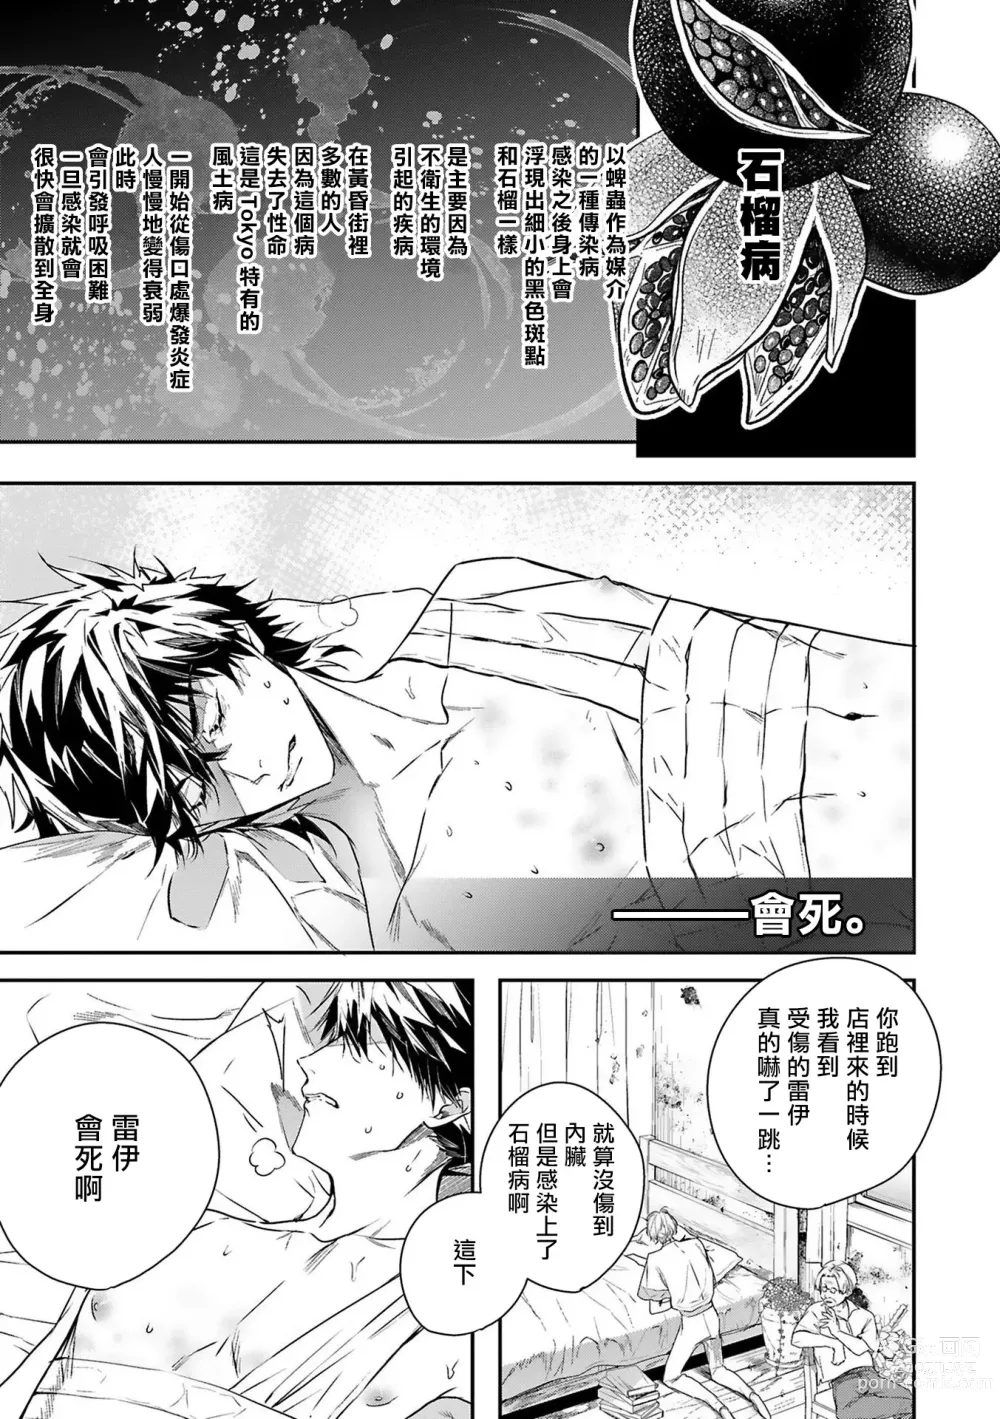 Page 1 of manga 末世青鸟 Ch. 4-10 + 特典 + 11-14